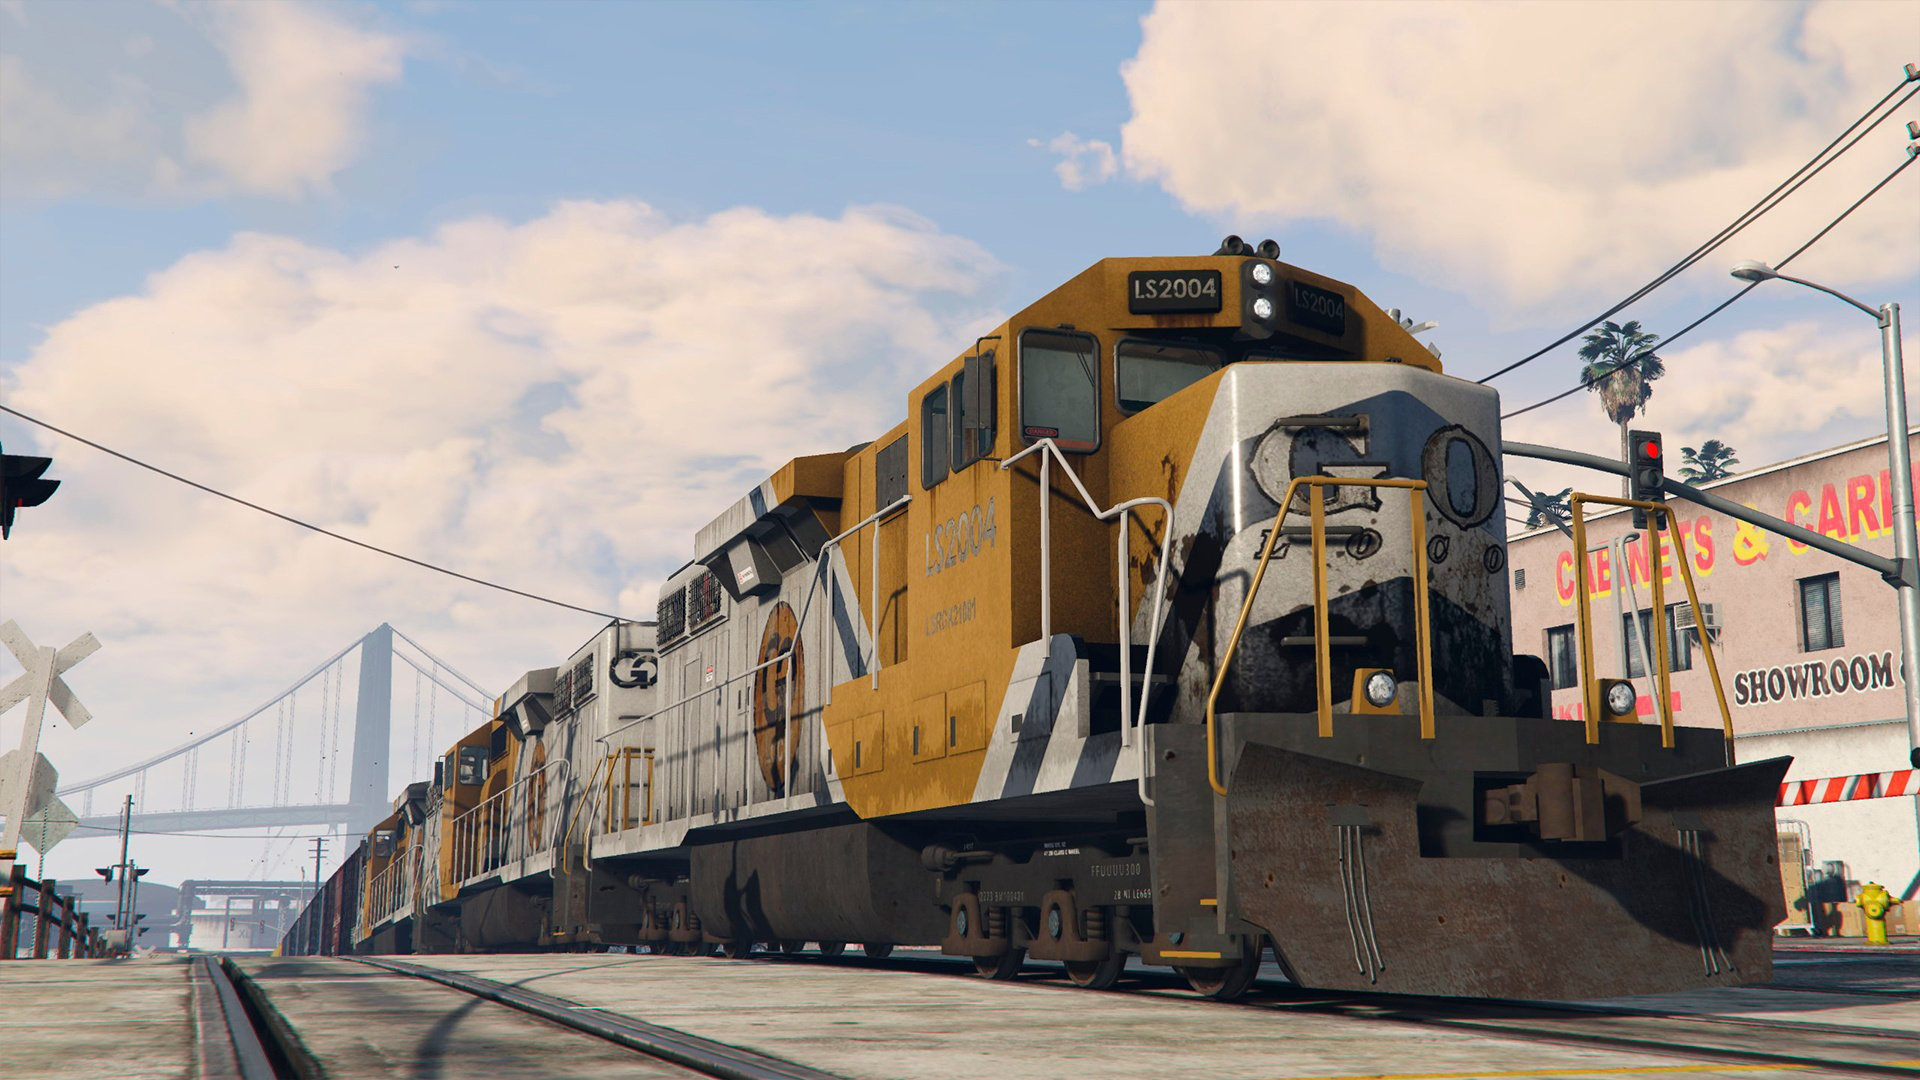 Gta 5 overhauled trains фото 16